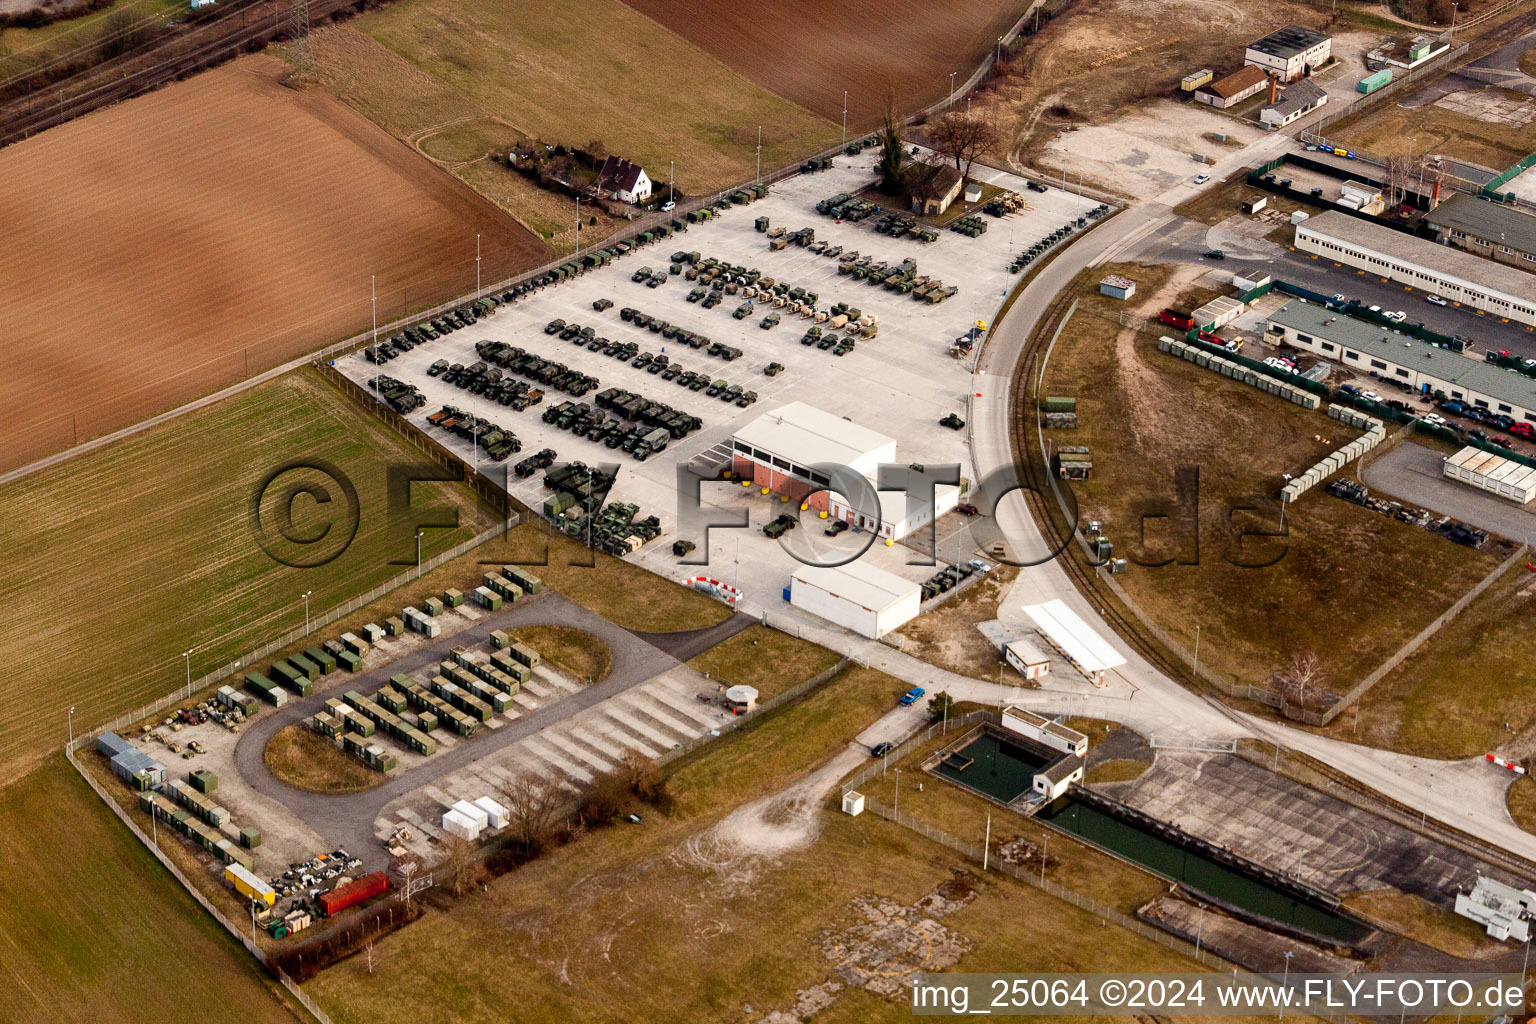 Vue aérienne de Parking pour véhicules militaires dans la zone d'entraînement de l'armée américaine à Schwetzingen dans le département Bade-Wurtemberg, Allemagne